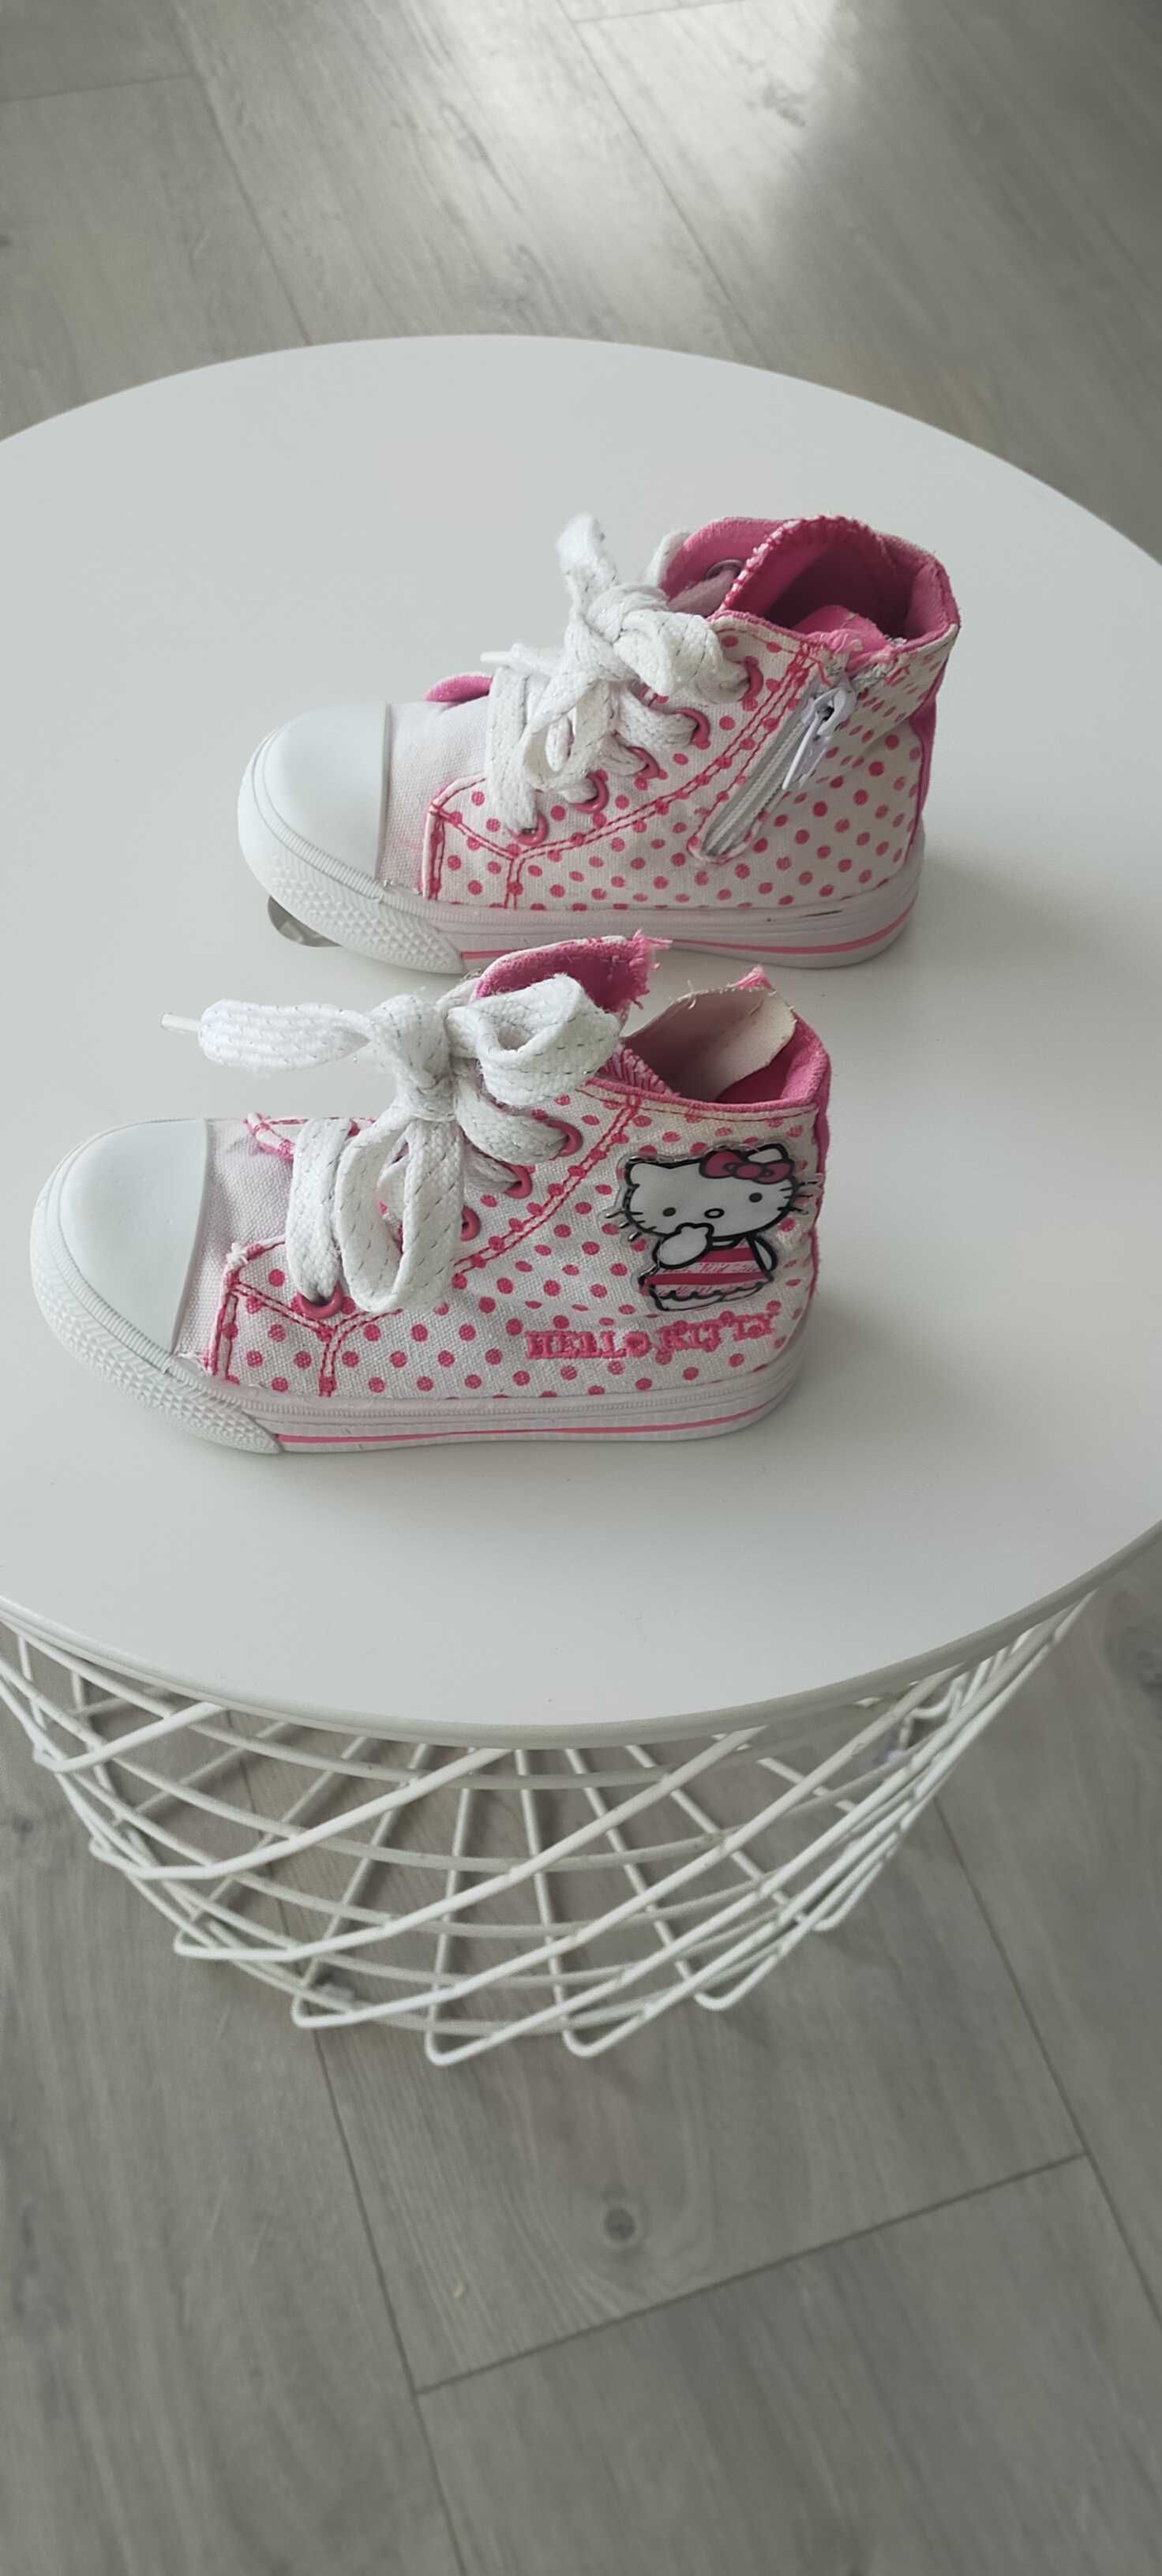 buty dziewczęce trampki rozmiar 24, firmy Sanrio Hello Kitty